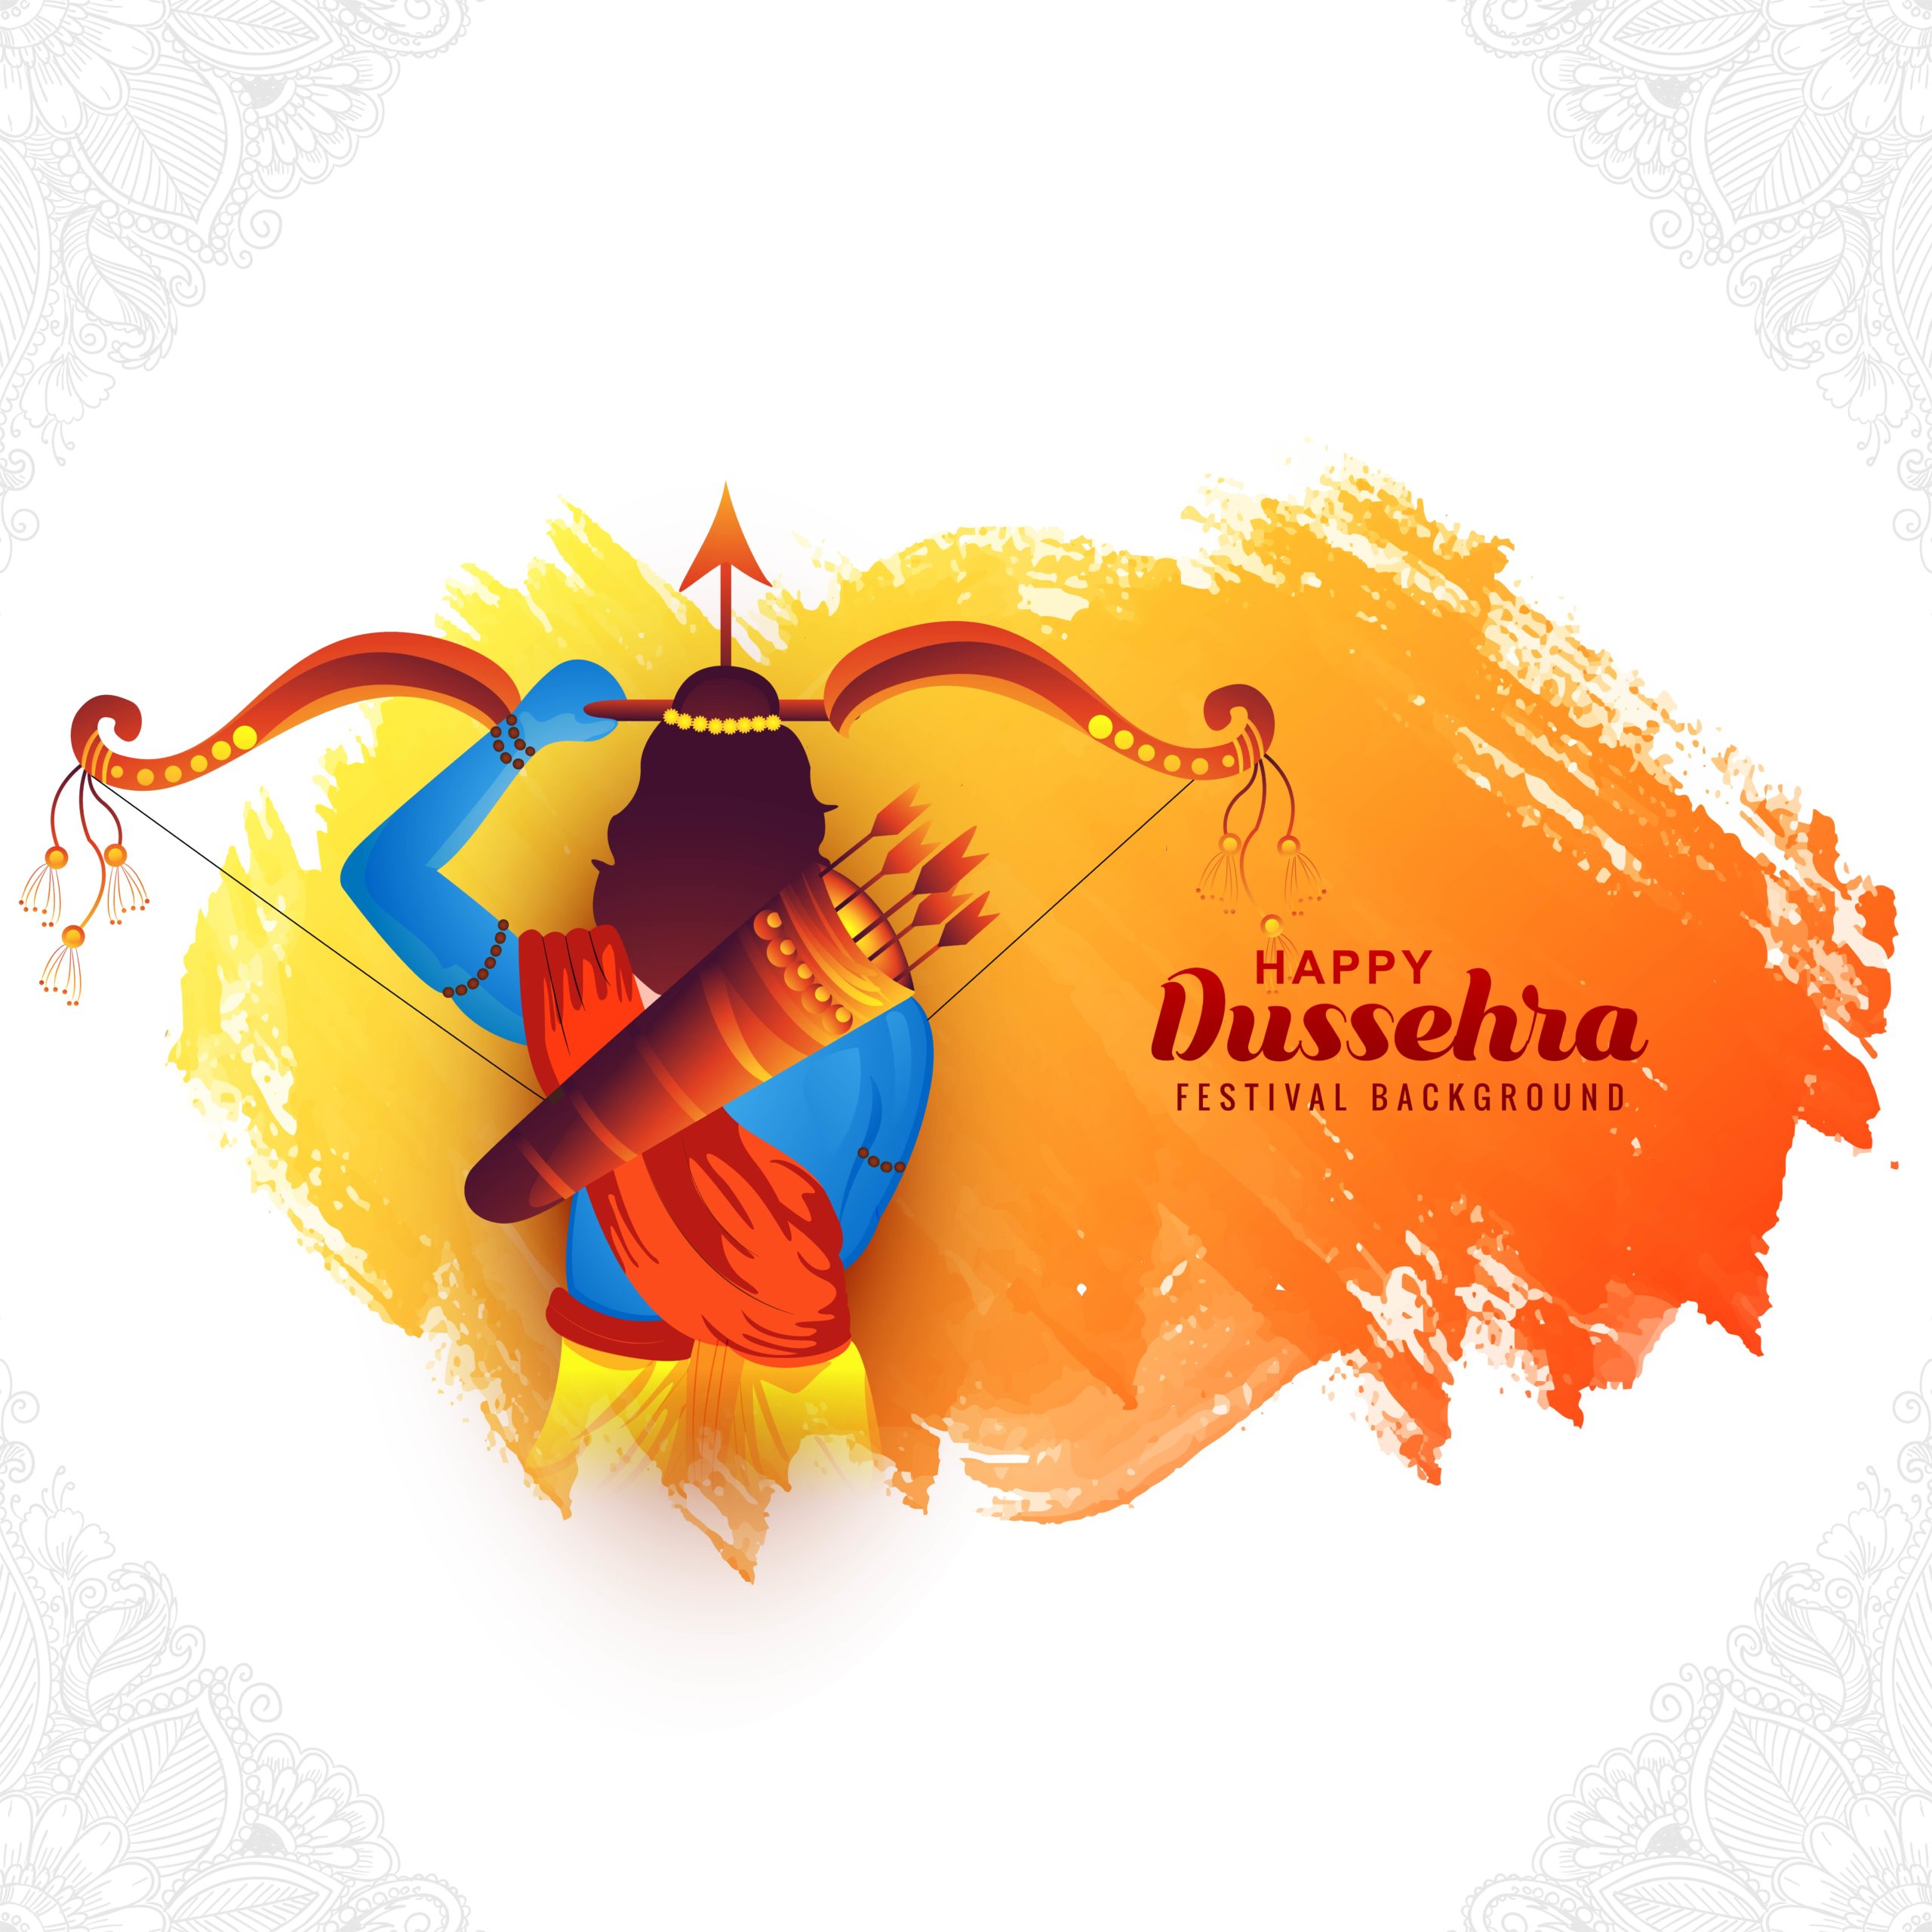 Dussehra 2022: أفضل التمنيات ، التحيات ، الاقتباسات ، الصور عالية الدقة ، الرسائل ، Shayari ، الفيديو ، الرسومات ، الملصقات ، واللافتات لتحية عائلتك وأصدقائك في 'Vijayadashmi'